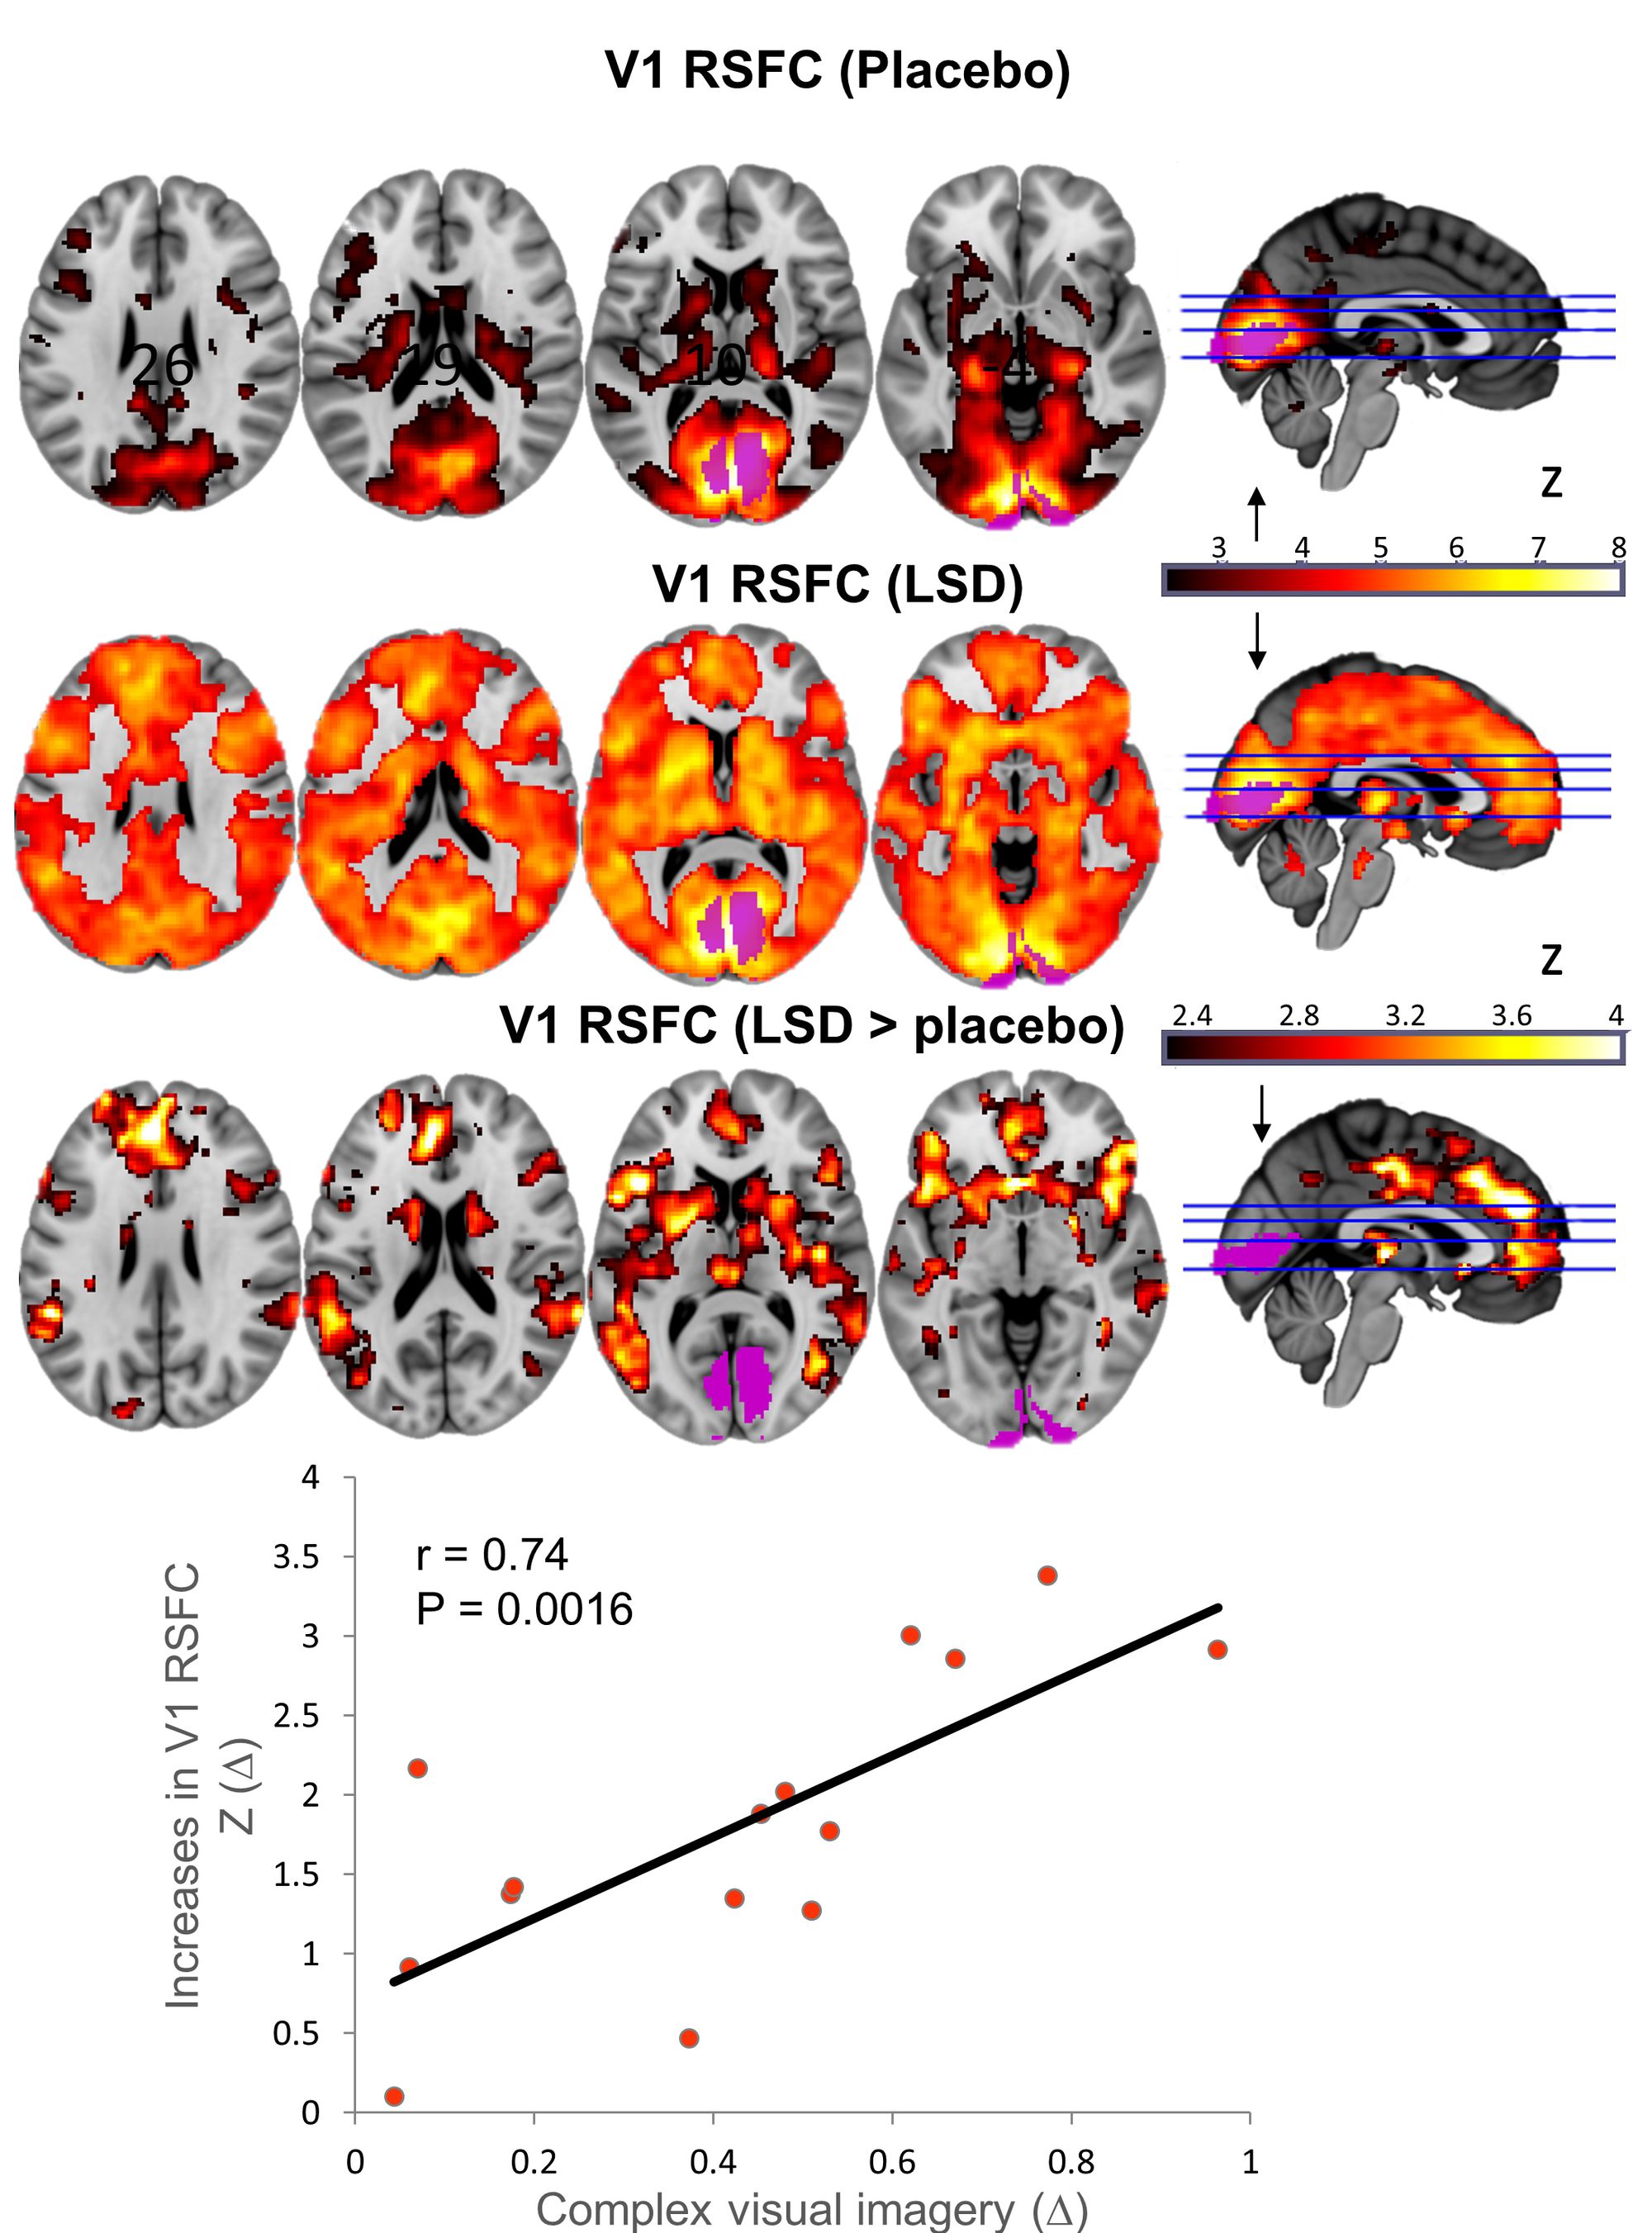 LSD brain scan images